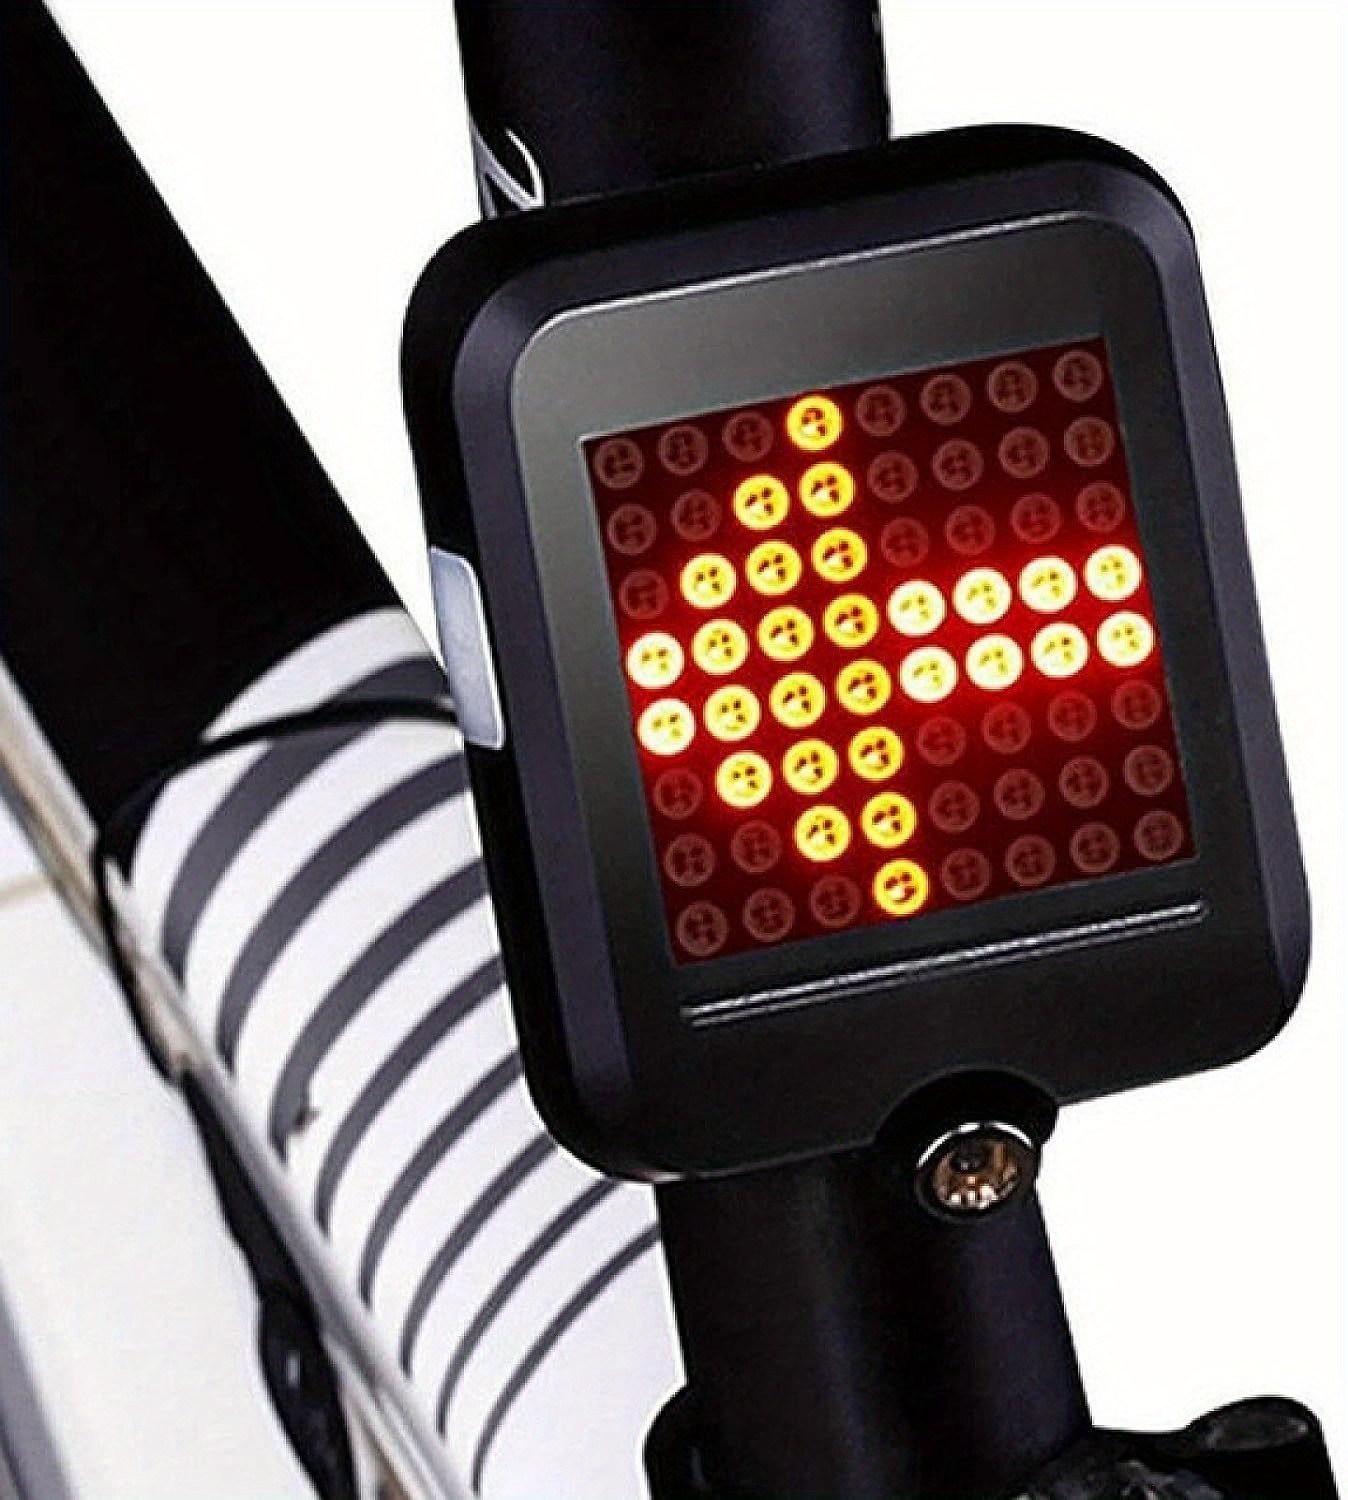 Kaufe WEST BIKING 5 m ferngesteuertes Fahrrad-Rücklicht, LED-Blinker,  MTB-Fahrradlicht, wasserdicht, wiederaufladbar über USB